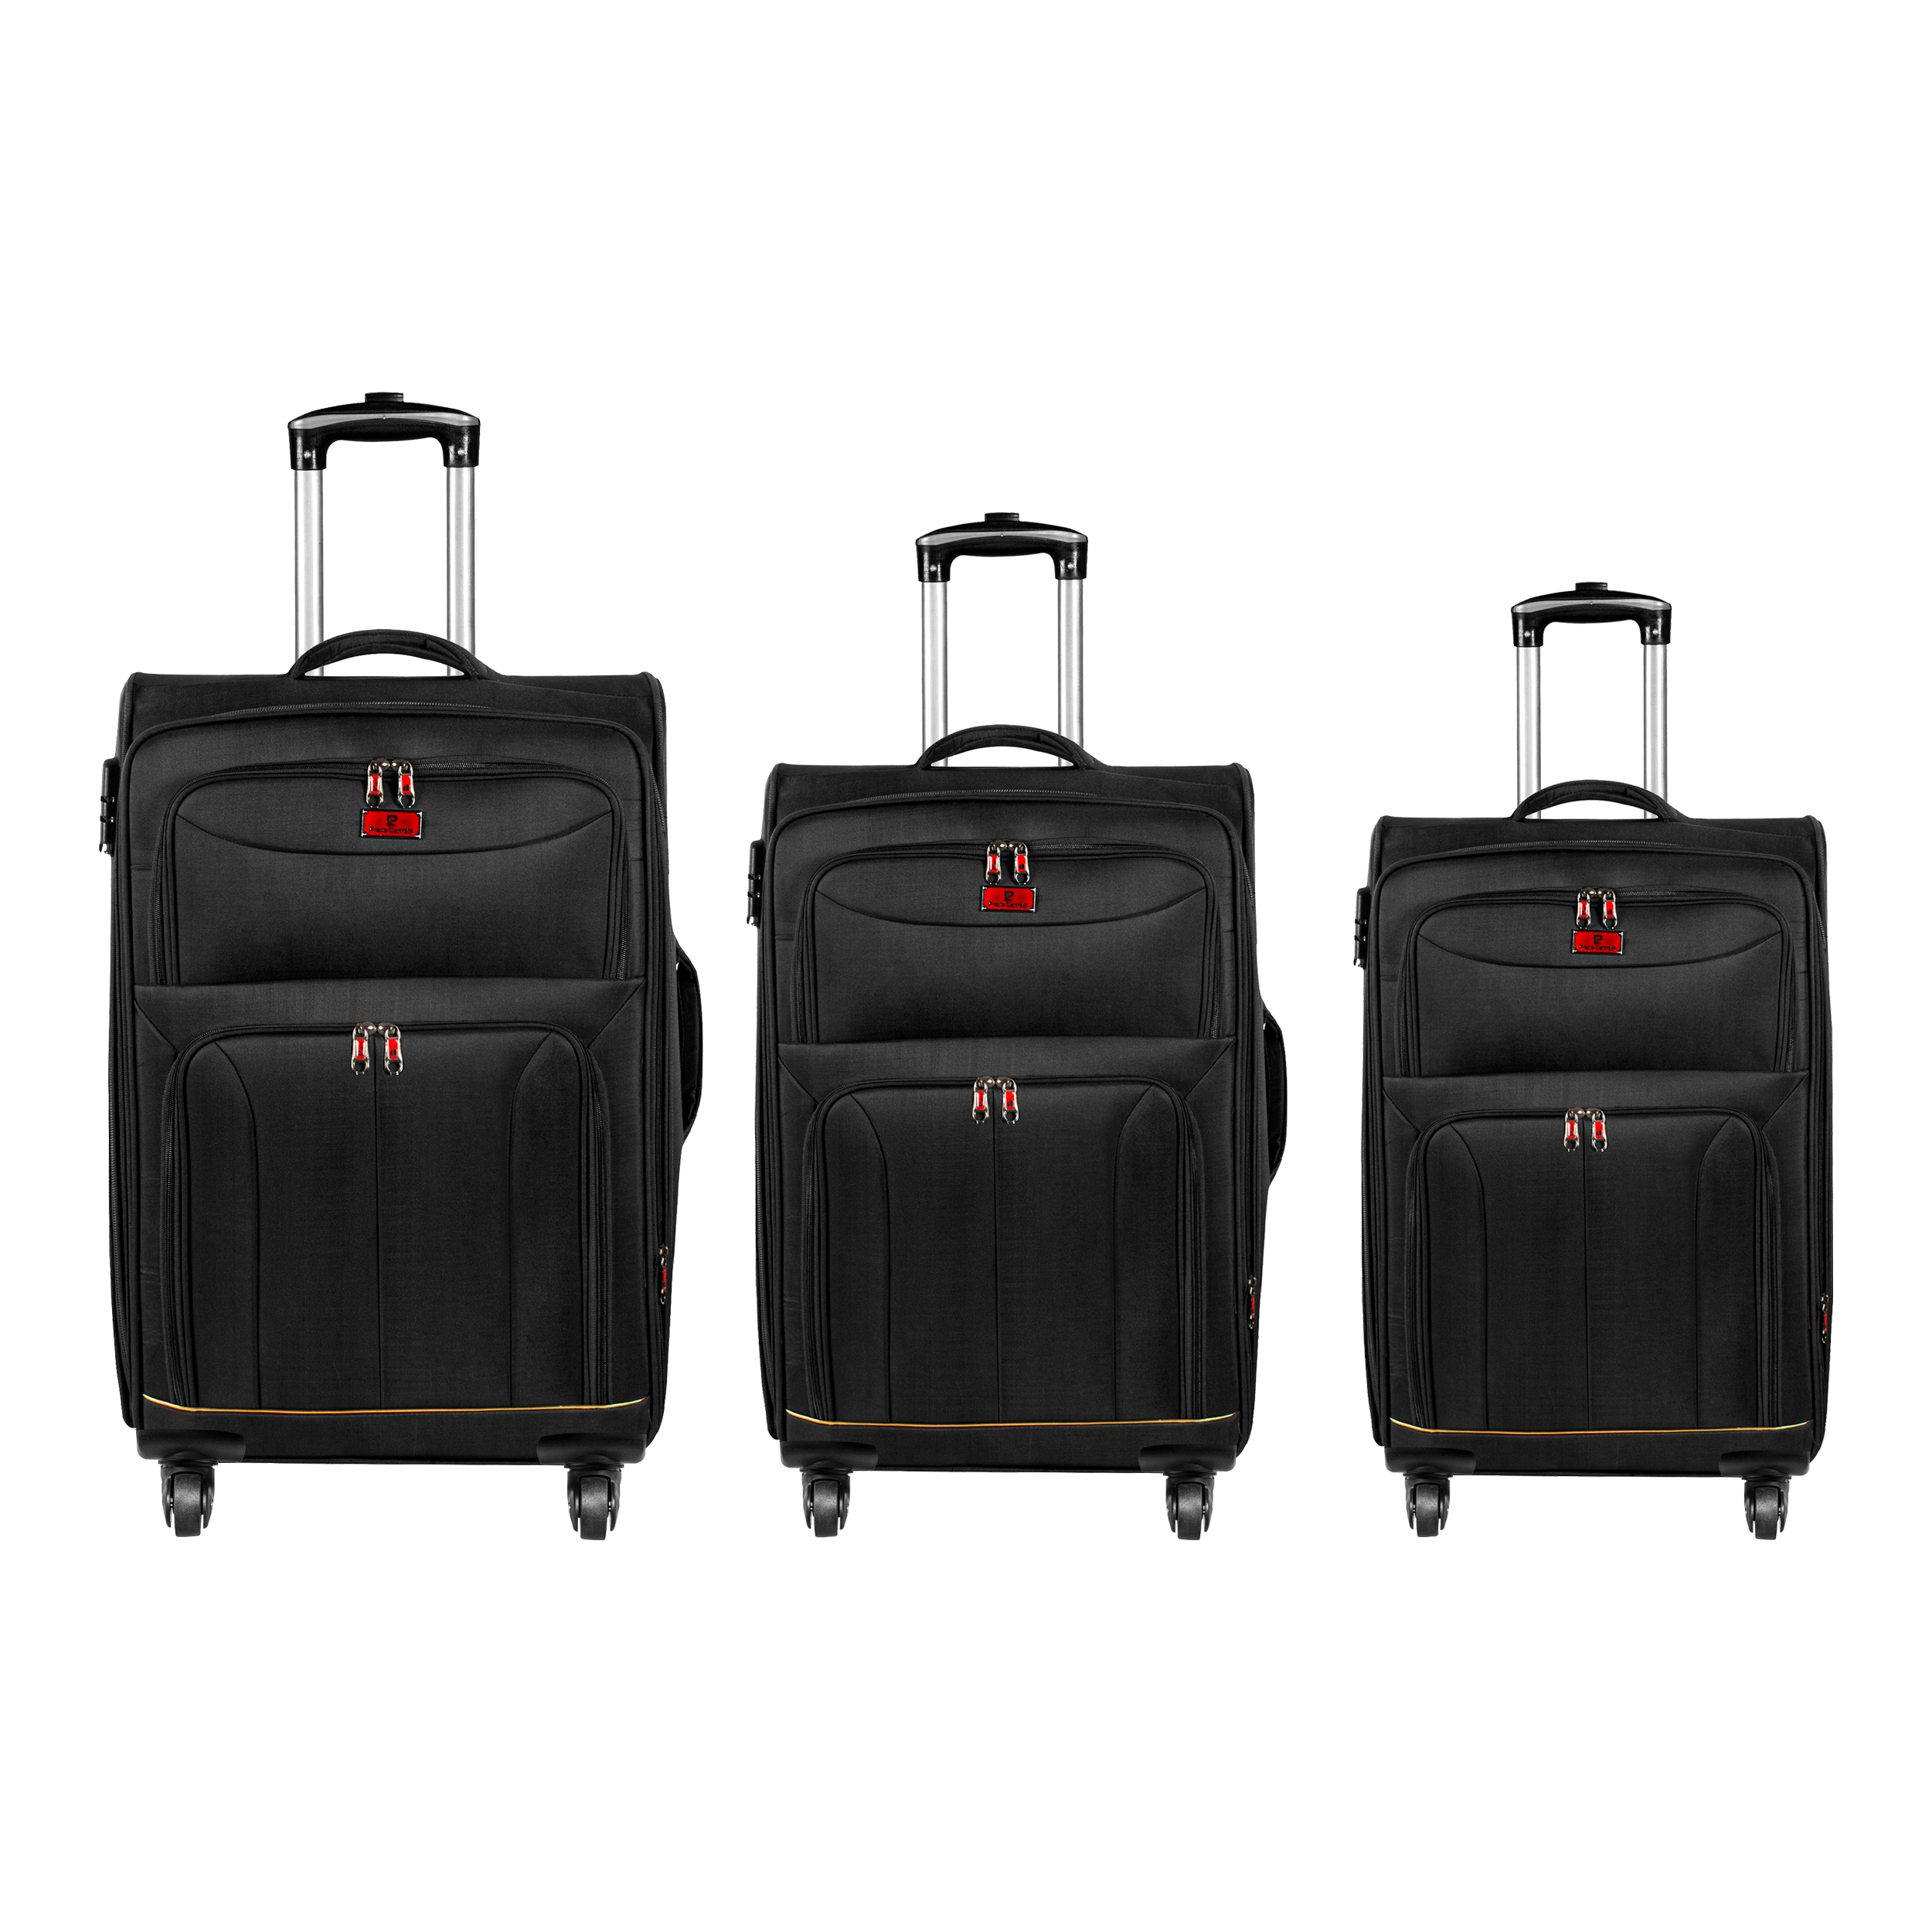 چمدان پیر کاردین مدل 8183 مجموعه سه عددی